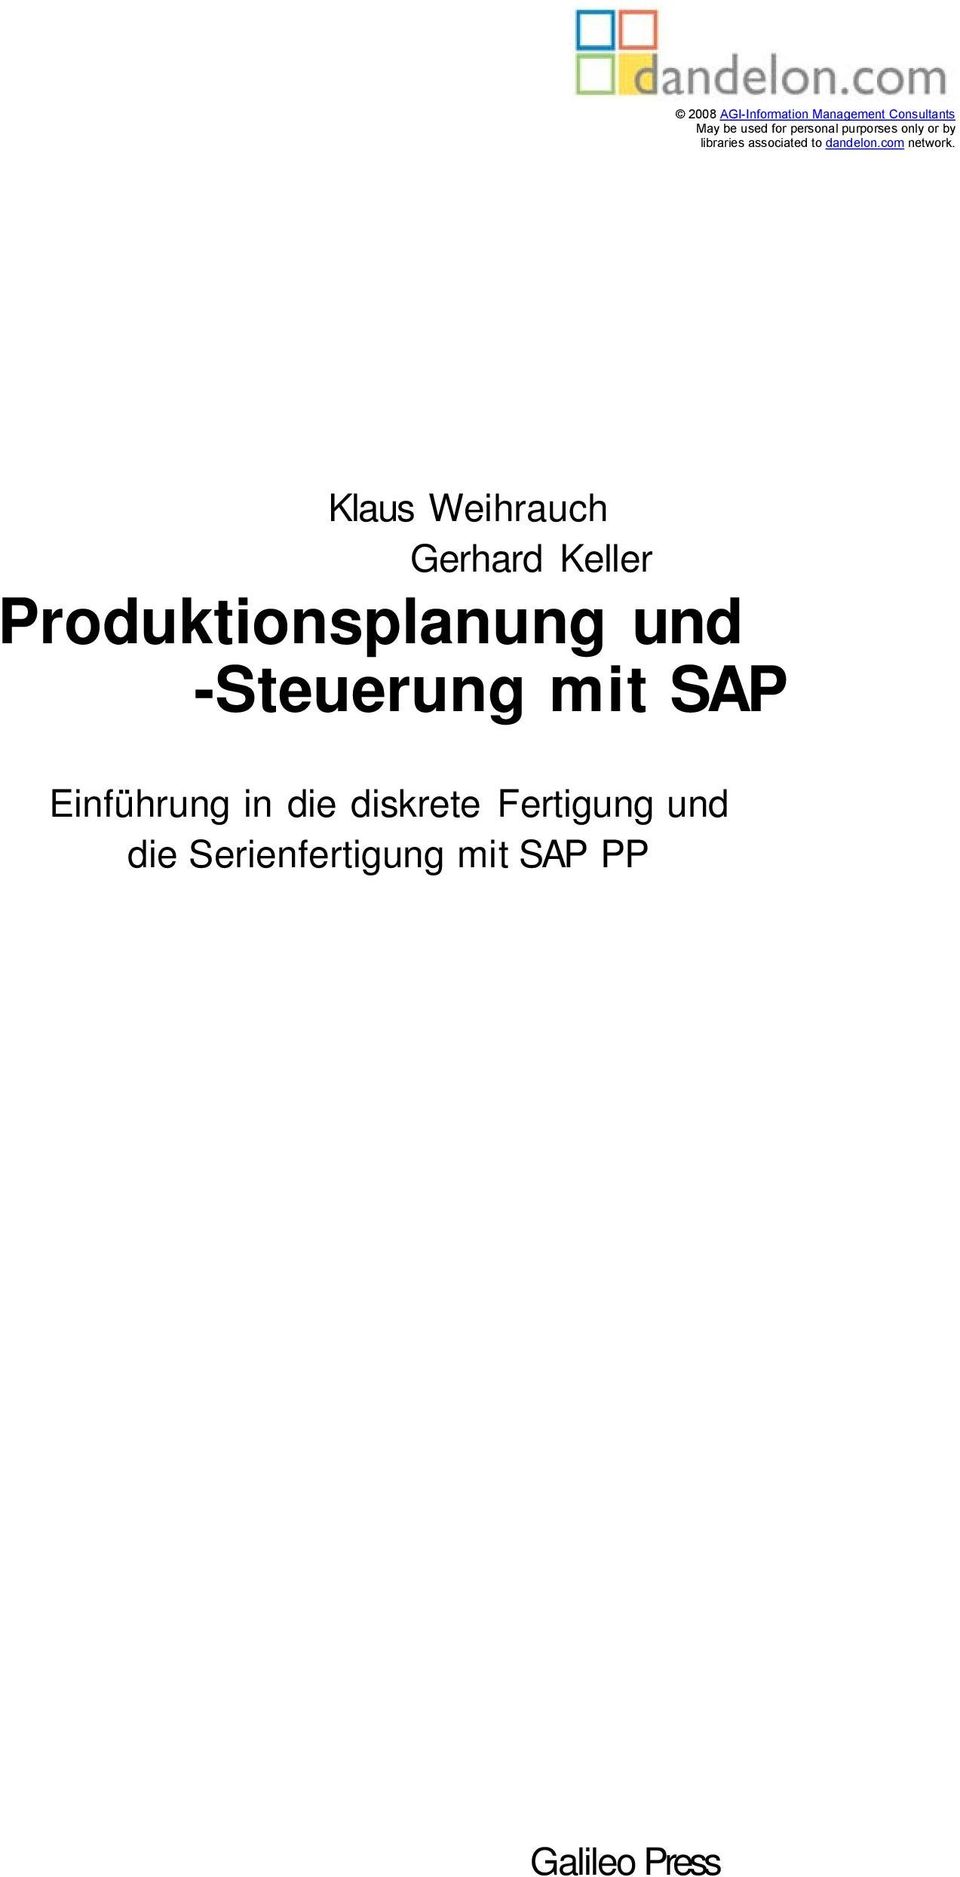 Klaus Weihrauch Gerhard Keller Produktionsplanung und -Steuerung mit SAP